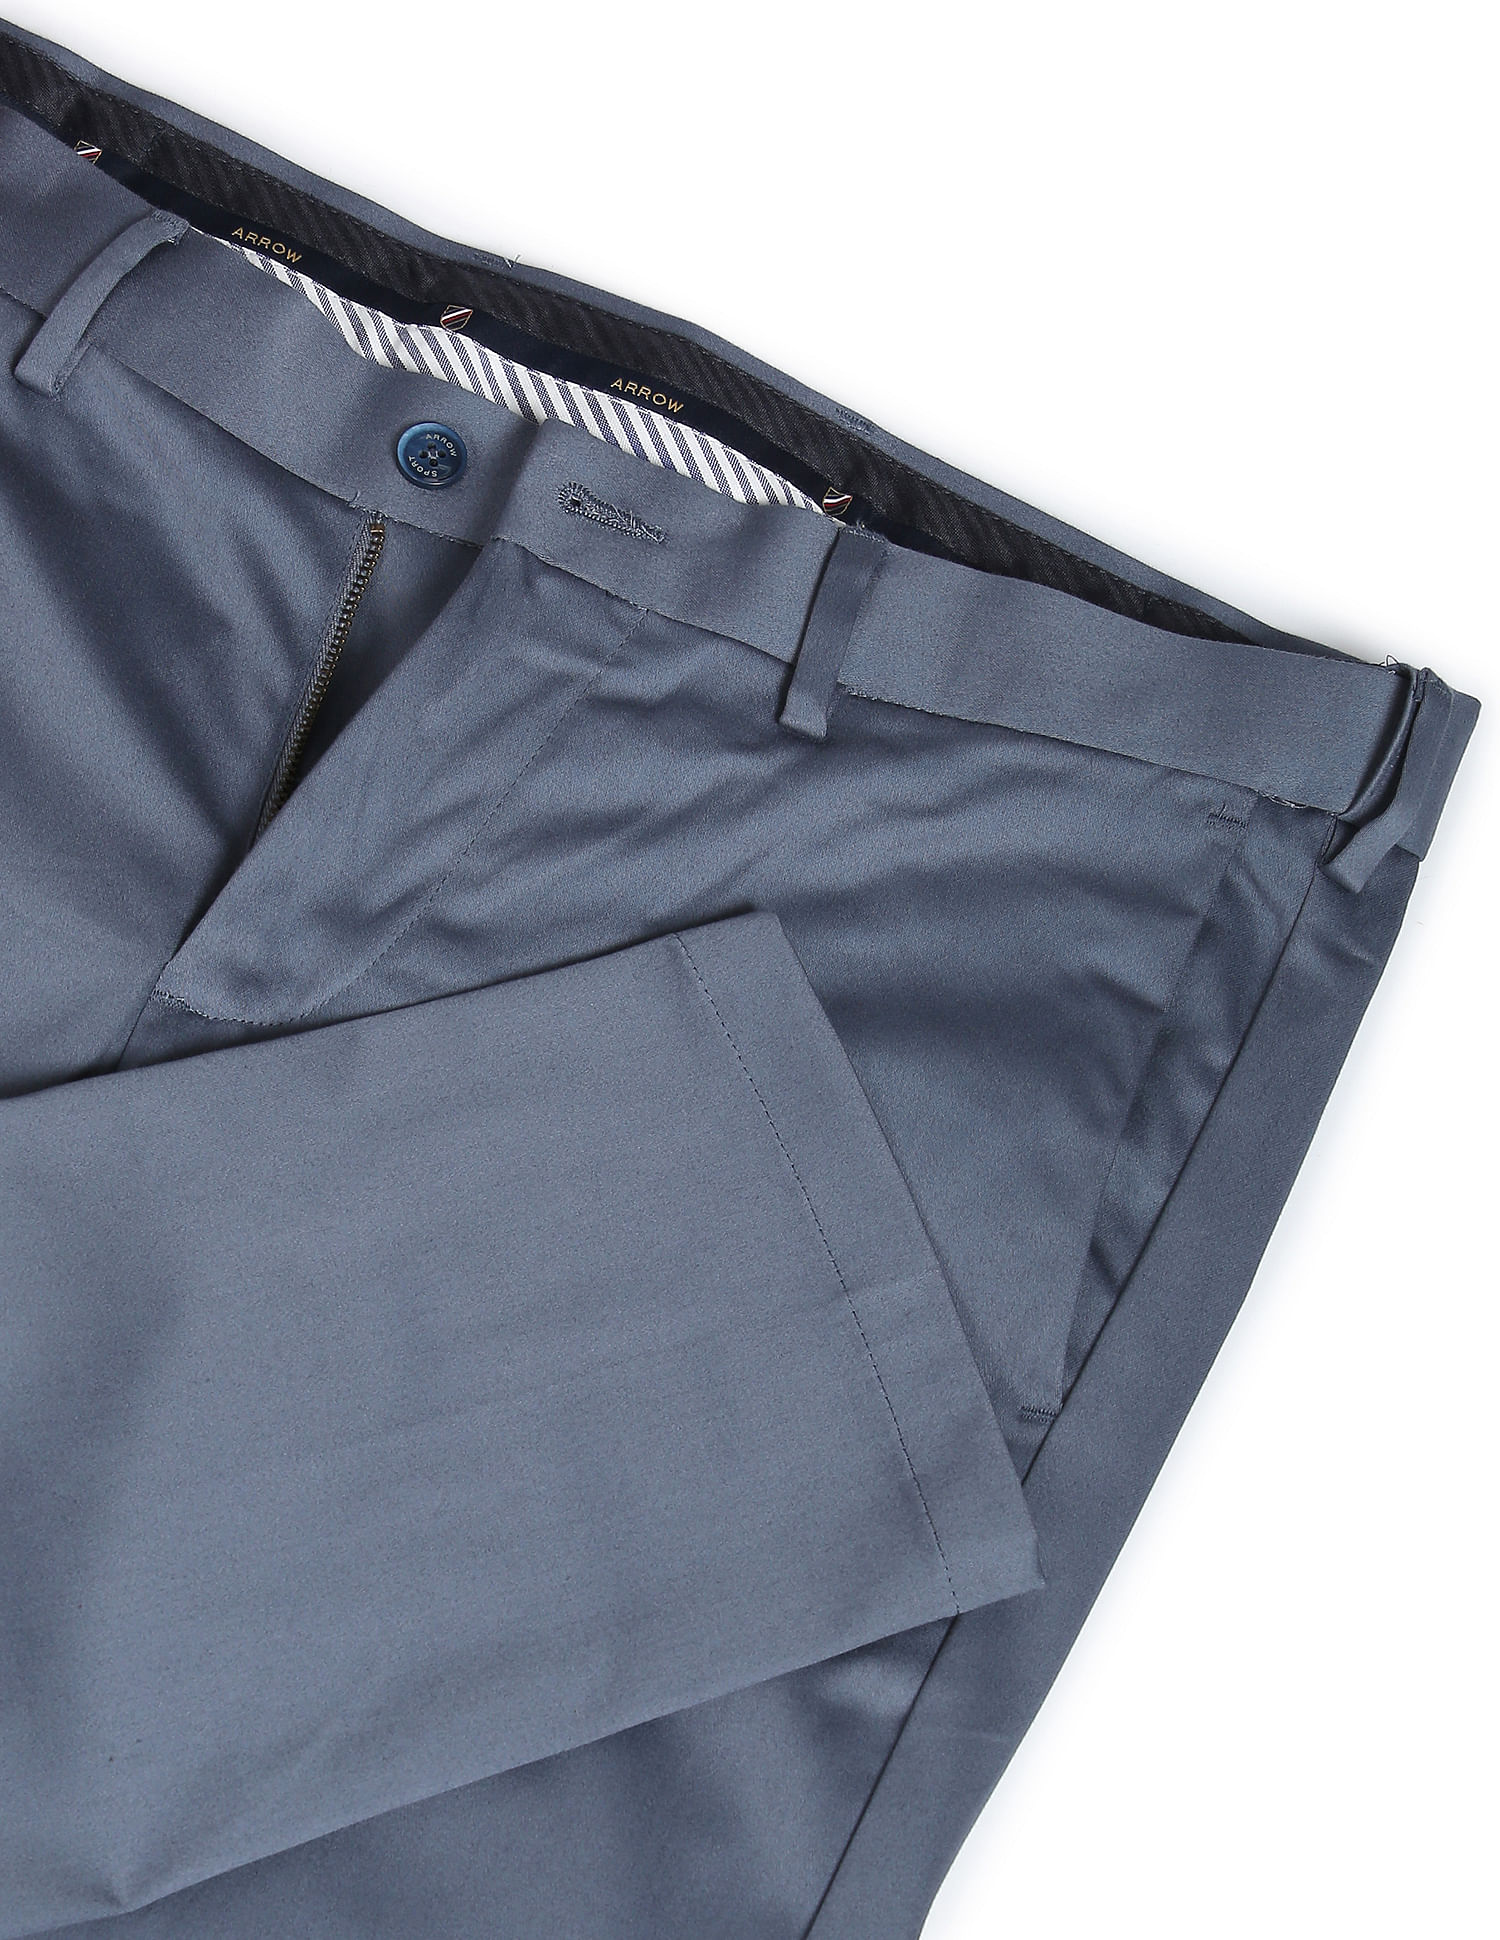 Buy Arrow Autoflex Dobby Formal Trousers - NNNOW.com